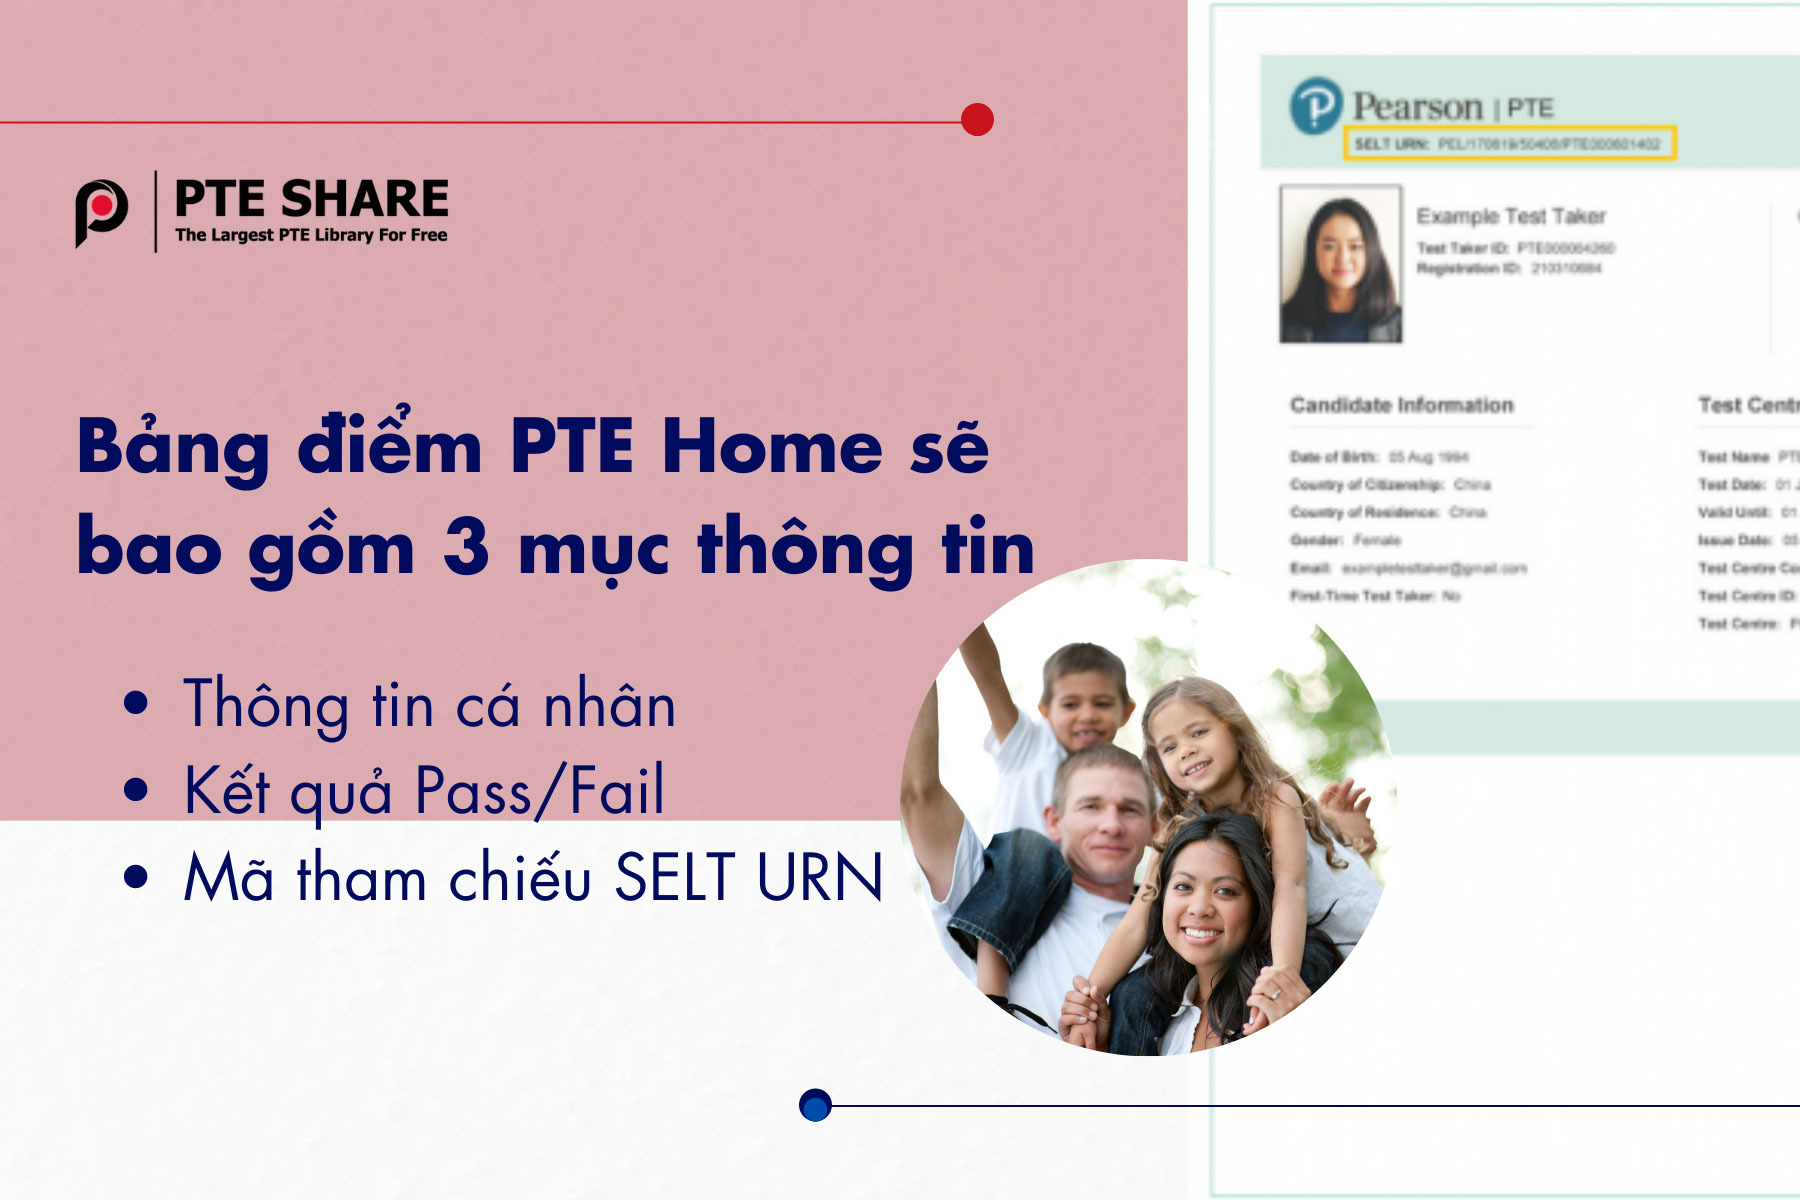 Bảng điểm PTE Home sẽ bao gồm 3 mục thông tin